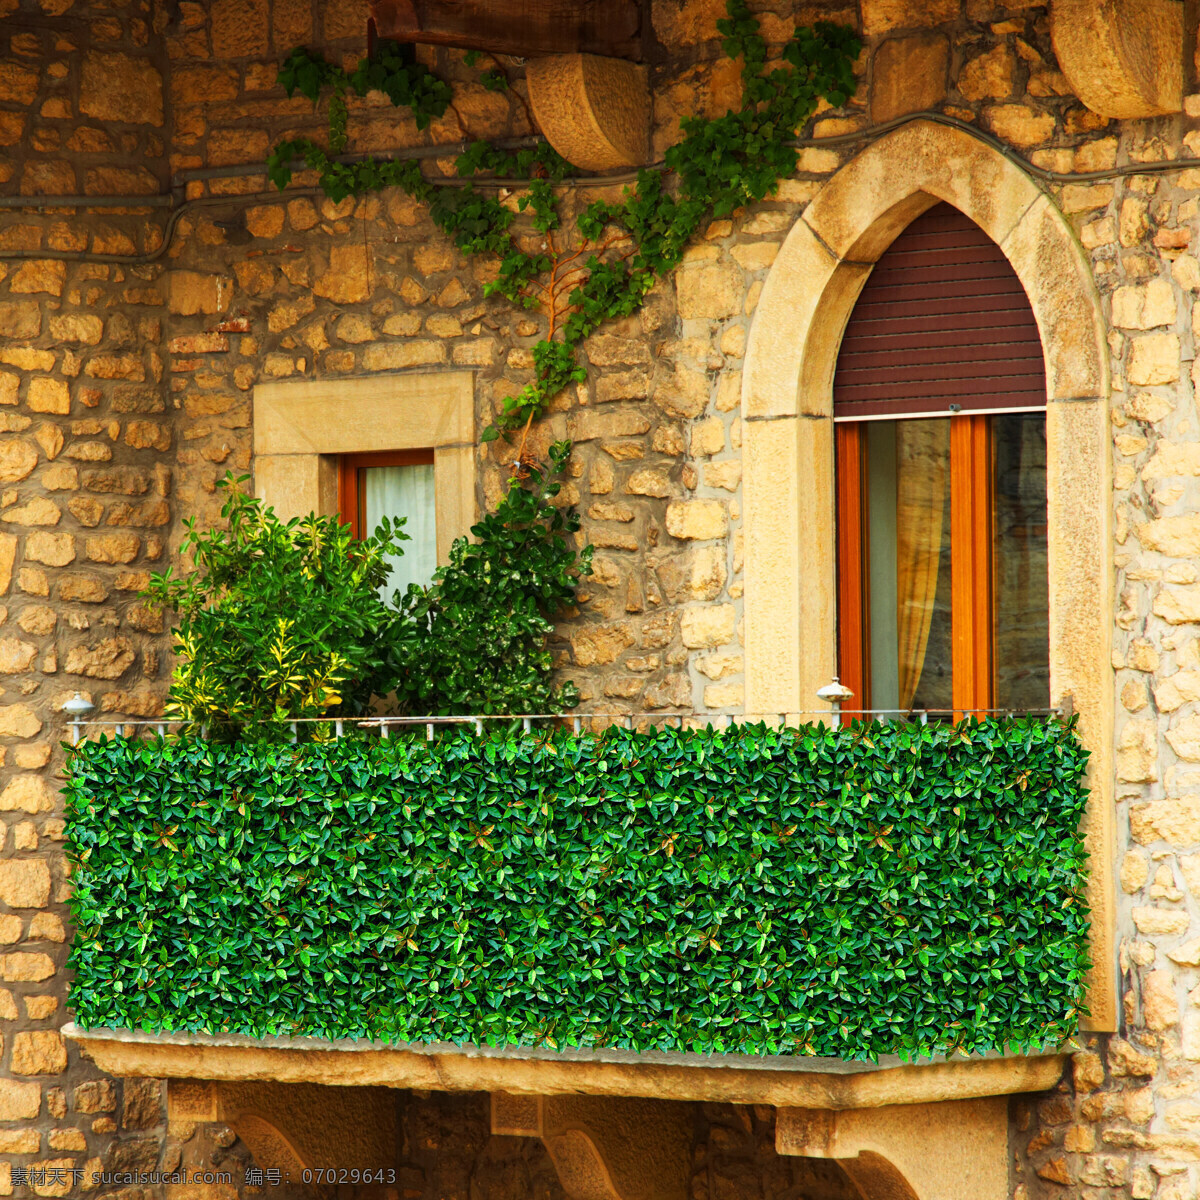 复古 护栏 环境设计 绿化 绿色 墙面 室内设计 阳台 植物 栅栏 仿真植物叶 仿真植物 装饰 家居装饰素材